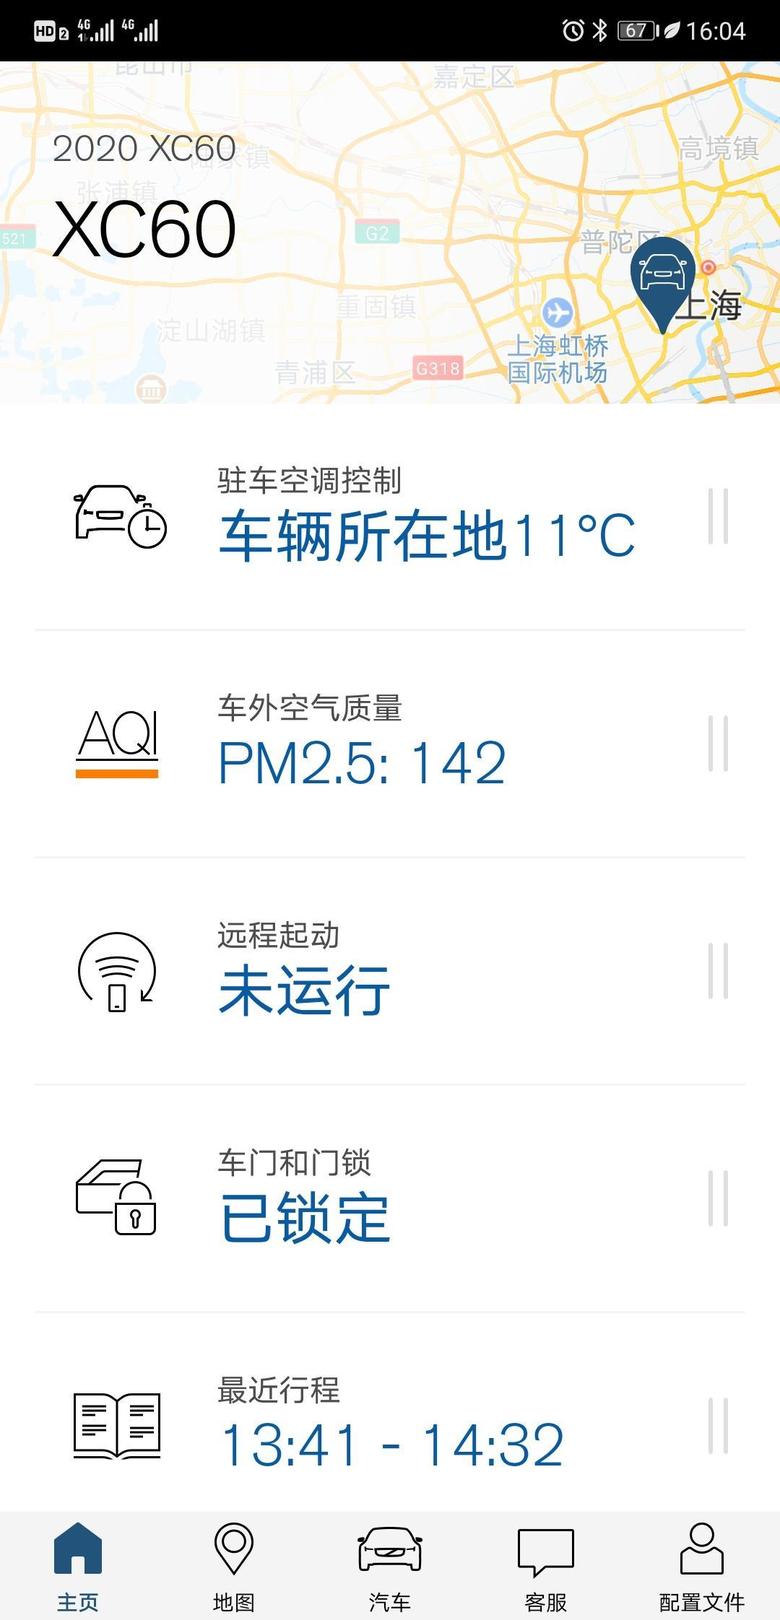 沃尔沃xc60 上海现在这种空气质量简直了，算得上今年质量最差的几天了吧，加上城市拥堵，污染在所难免。好在咱的车空调过滤还不错?